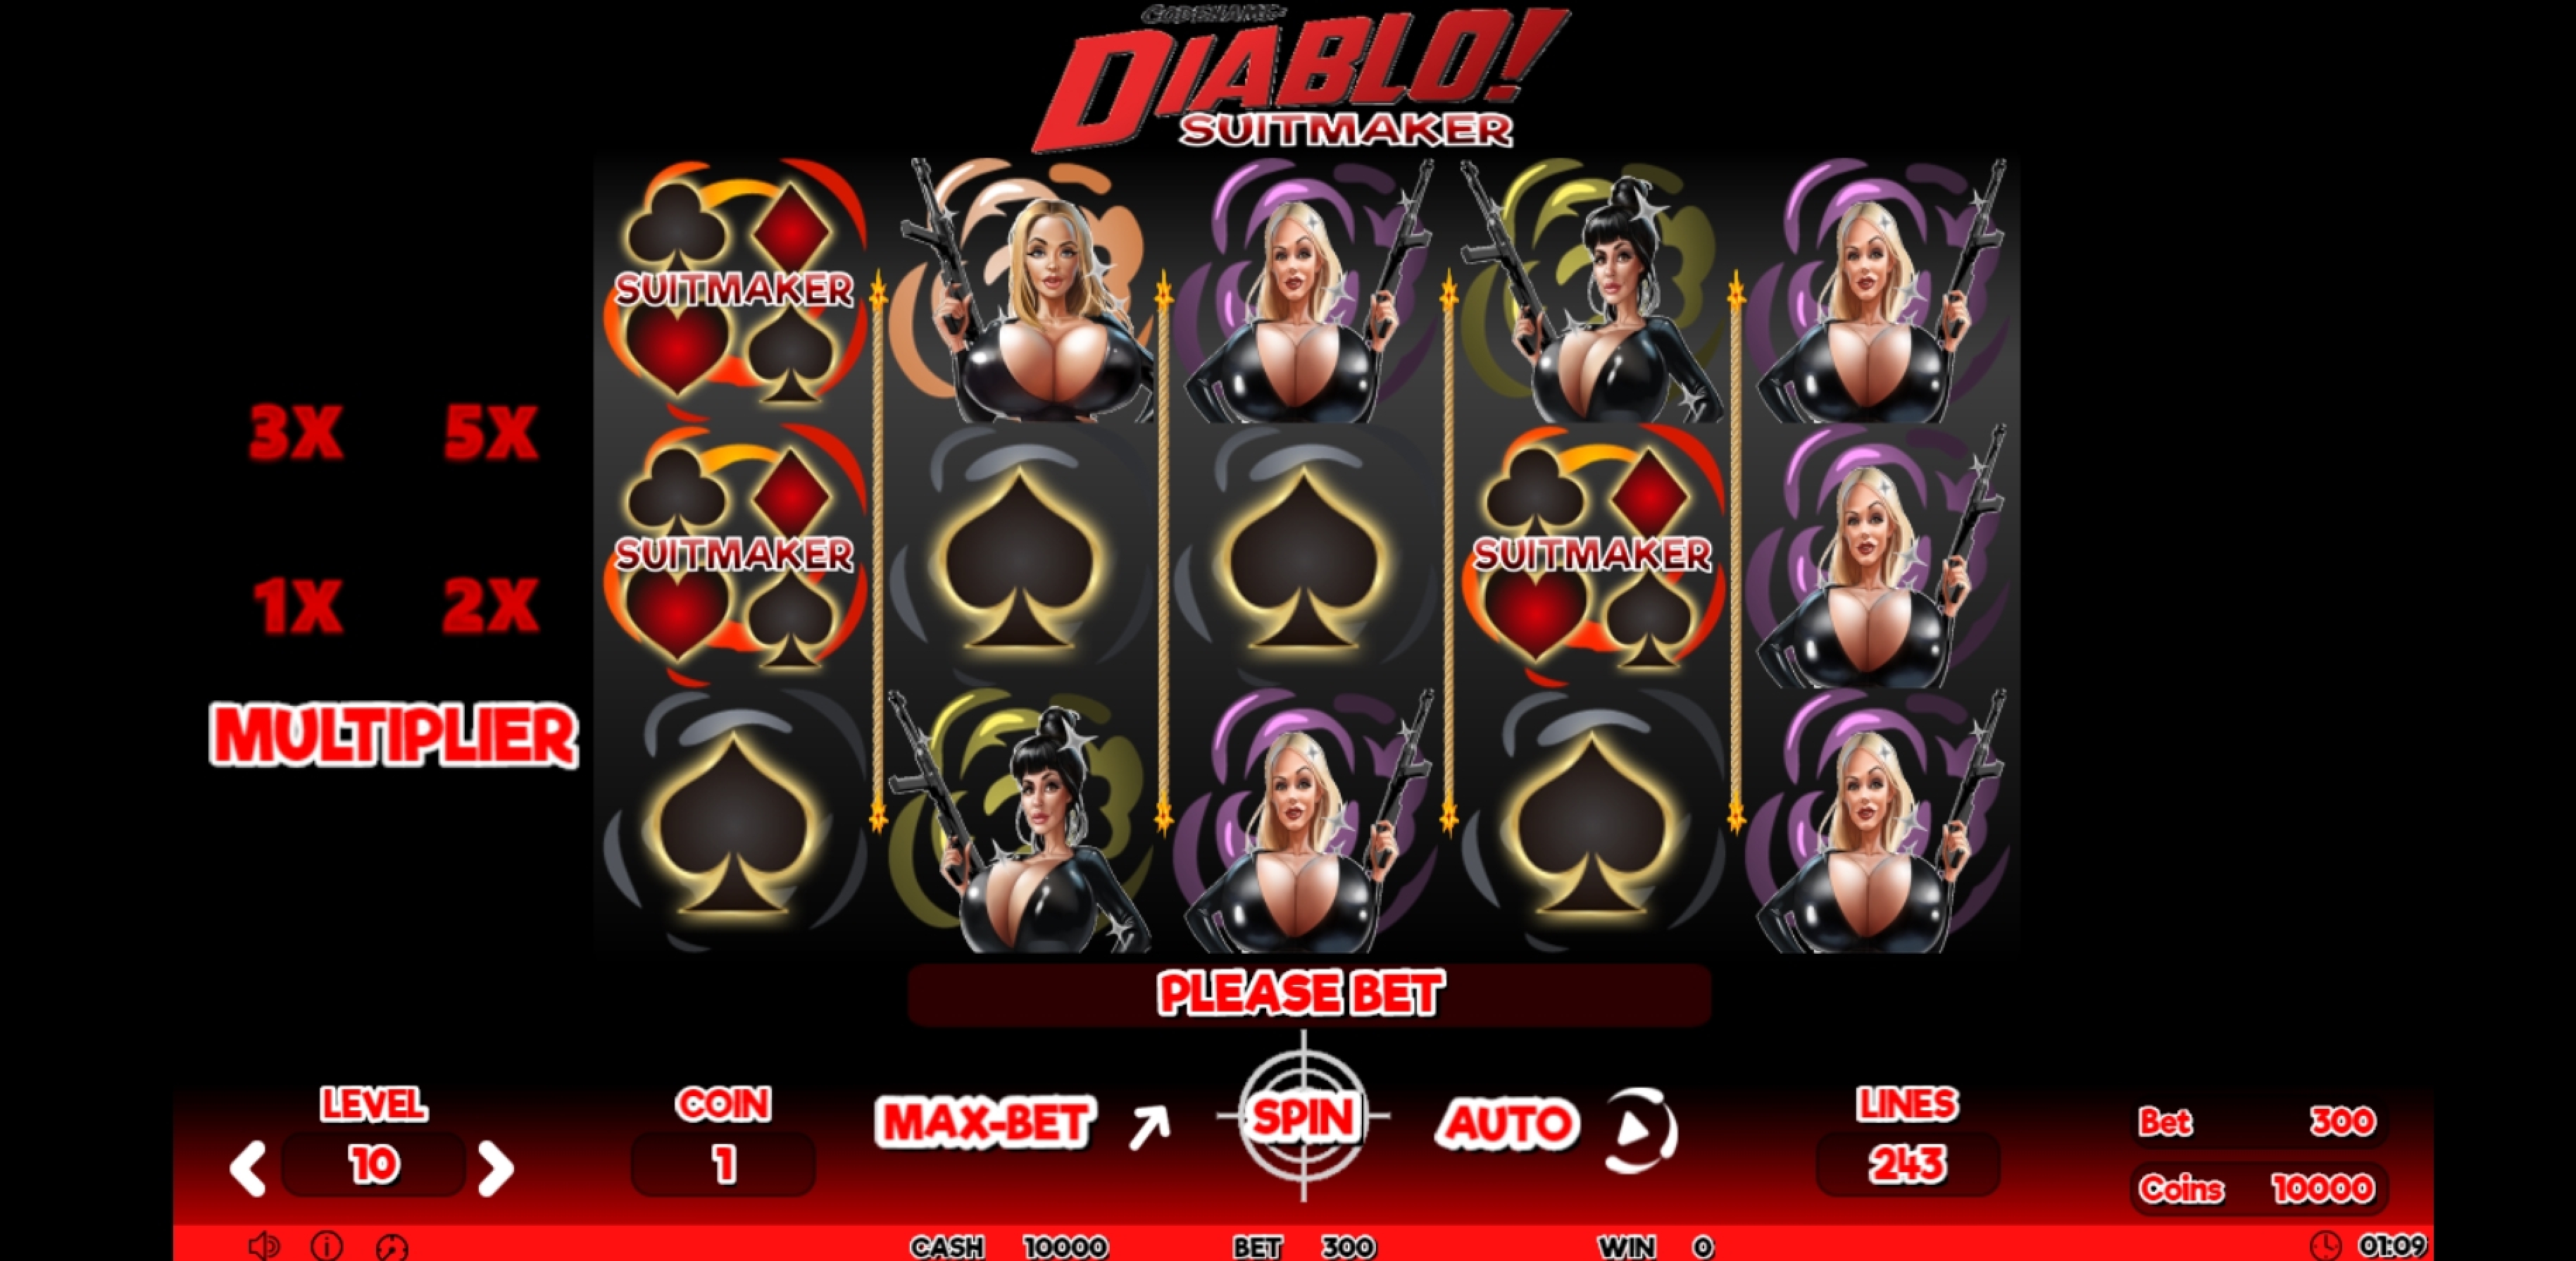 Reels in Codename Diablo Suitmaker Slot Game by Skyrocket Entertainment